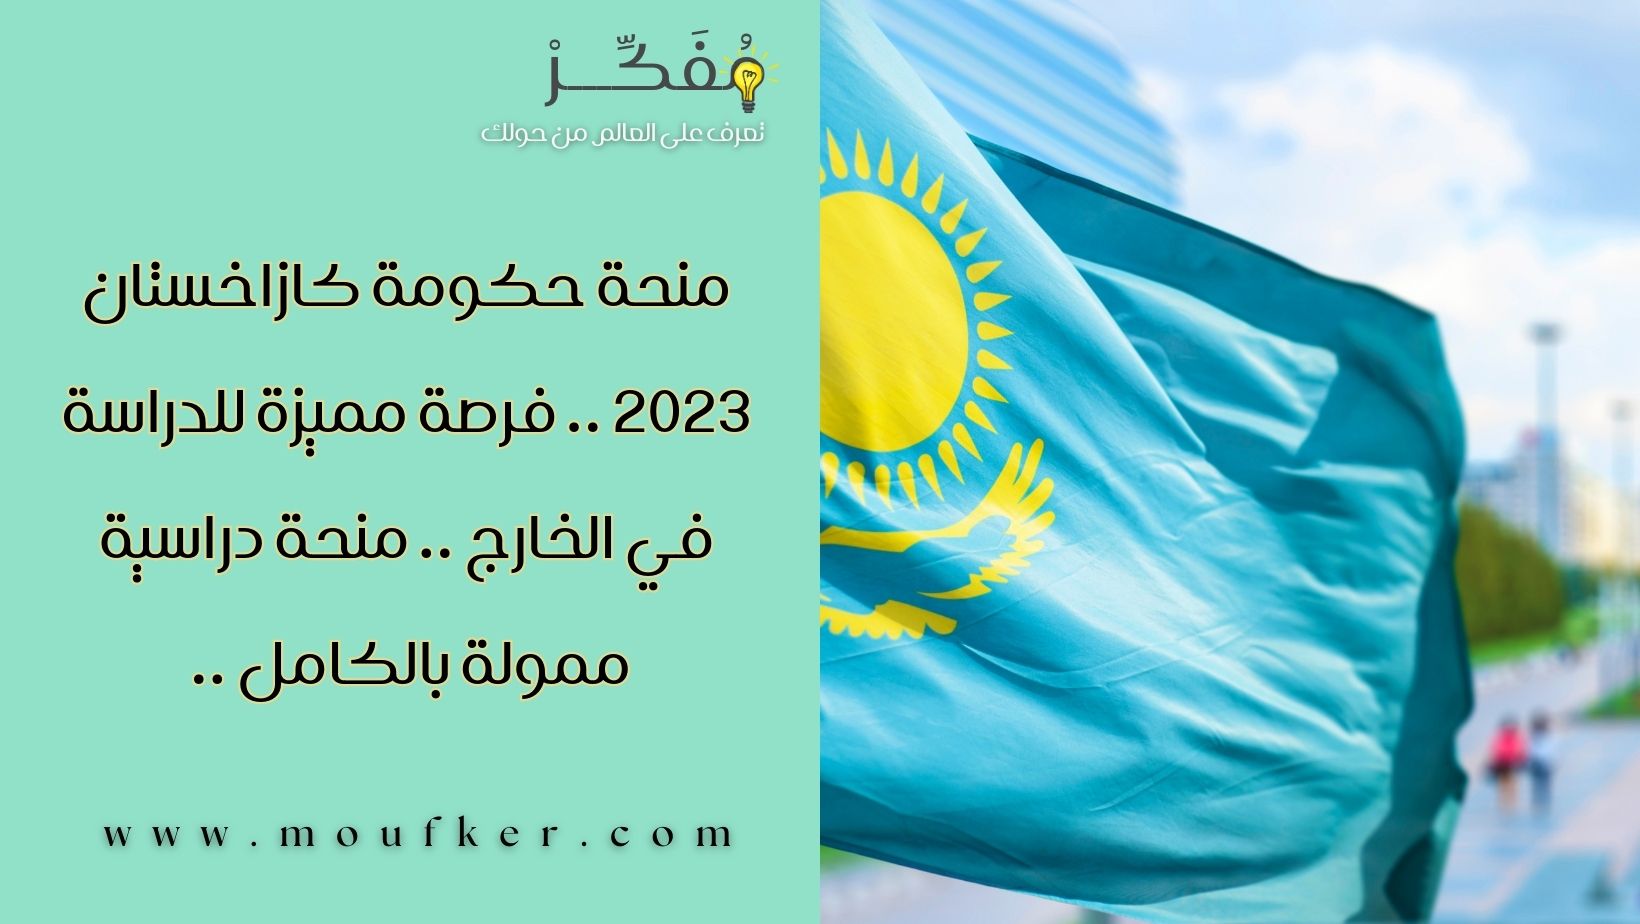 منحة حكومة كازاخستان 2023 .. فرصة مميزة للدراسة في الخارج .. منحة دراسية ممولة بالكامل  ..